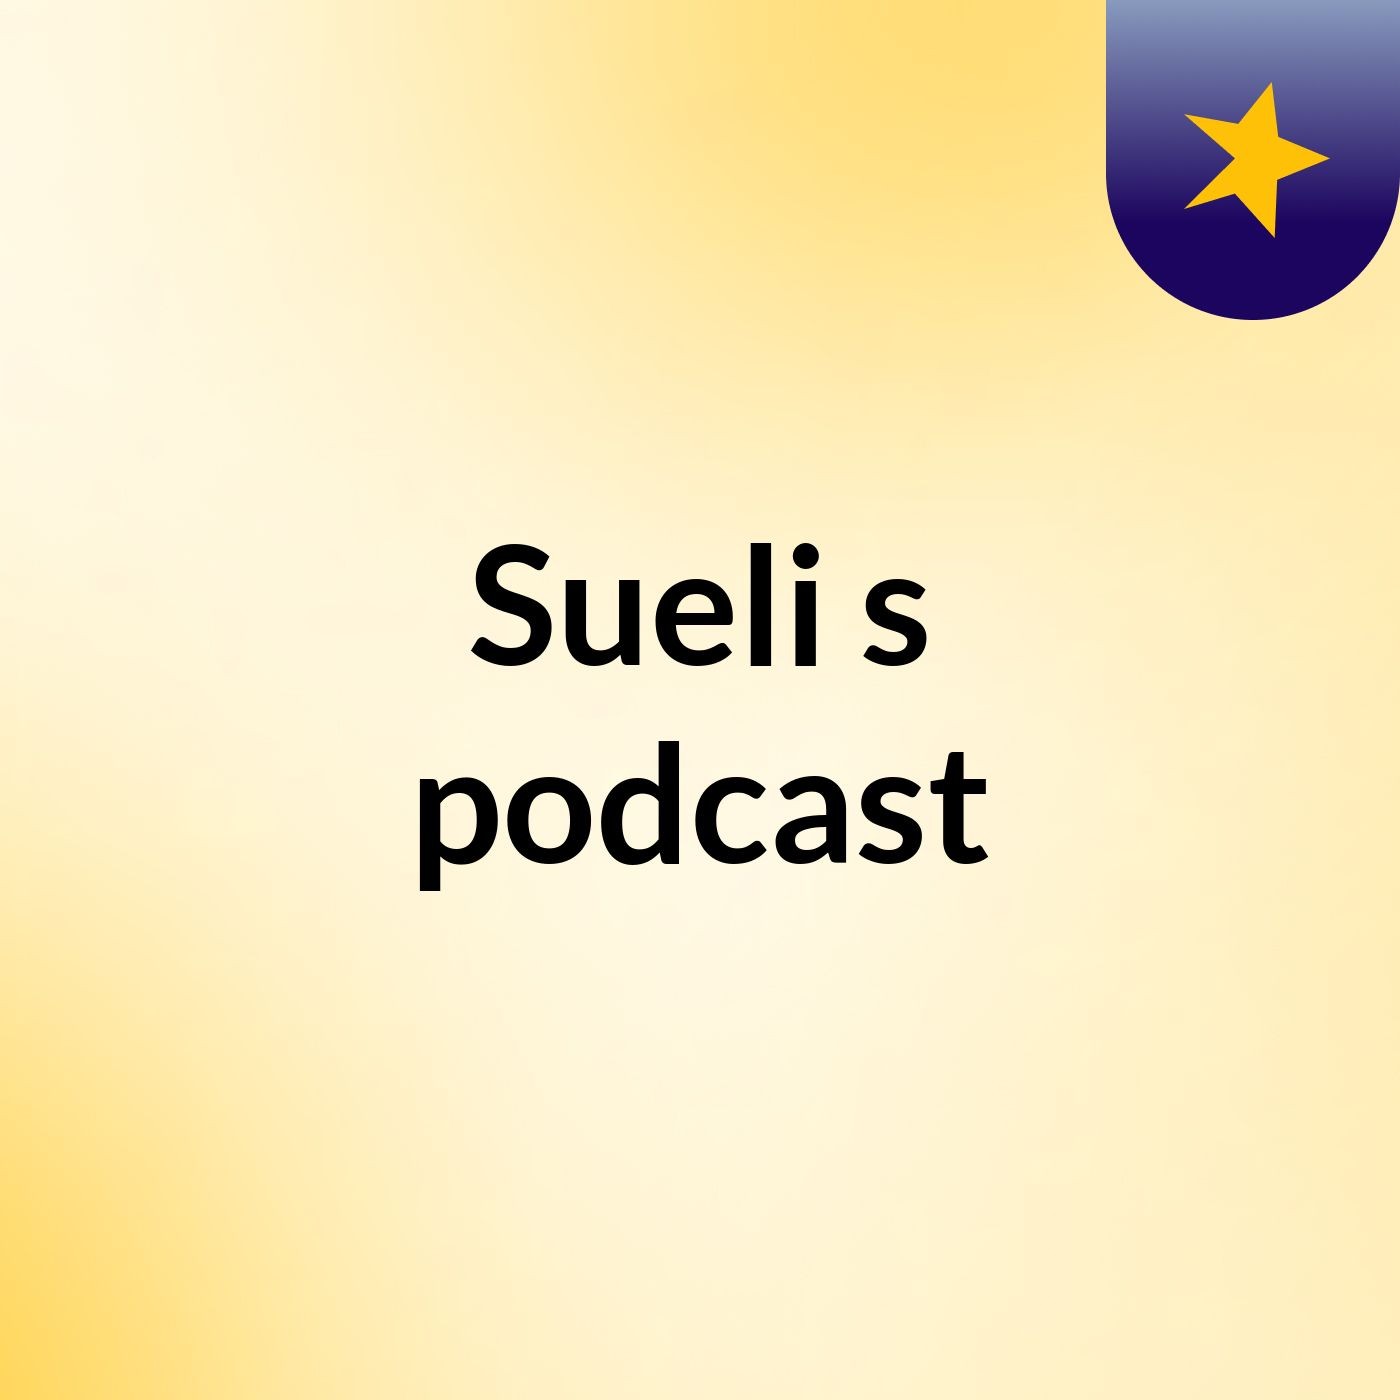 Sueli's podcast